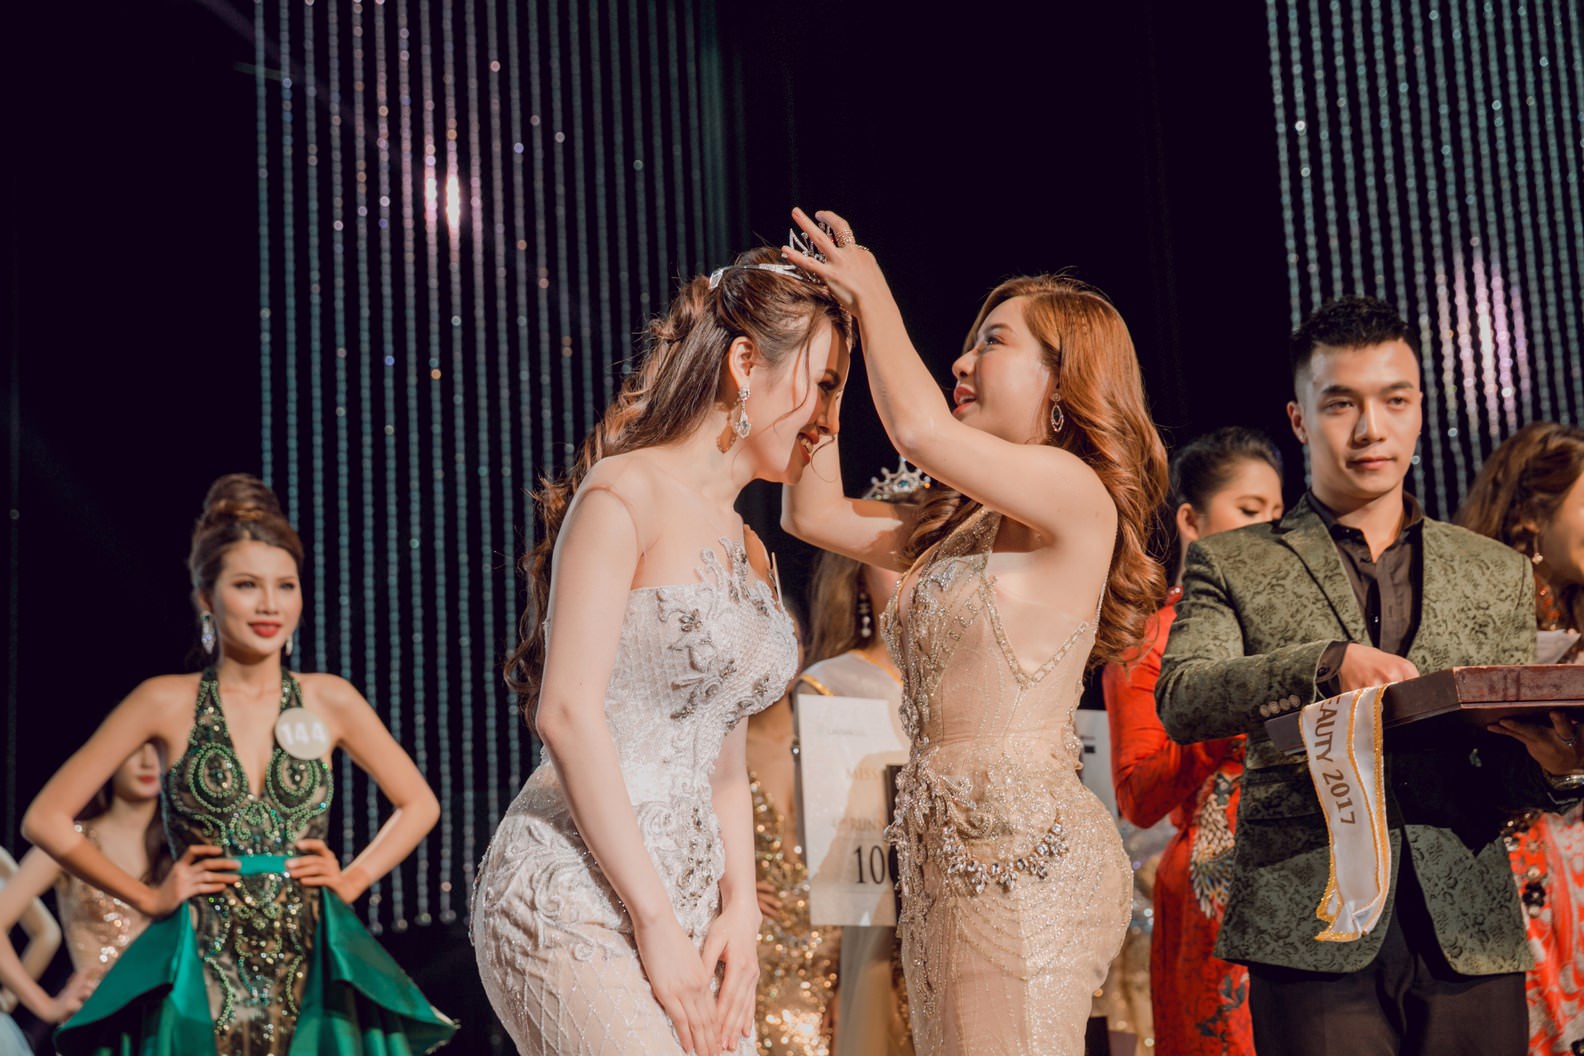 Trưởng BGK Mai Diệu Linh lên tiếng phản bác Phan Anh trước lùm xùm Top 5 cuộc thi Miss Perfect Global Beauty 2017 không xứng đáng